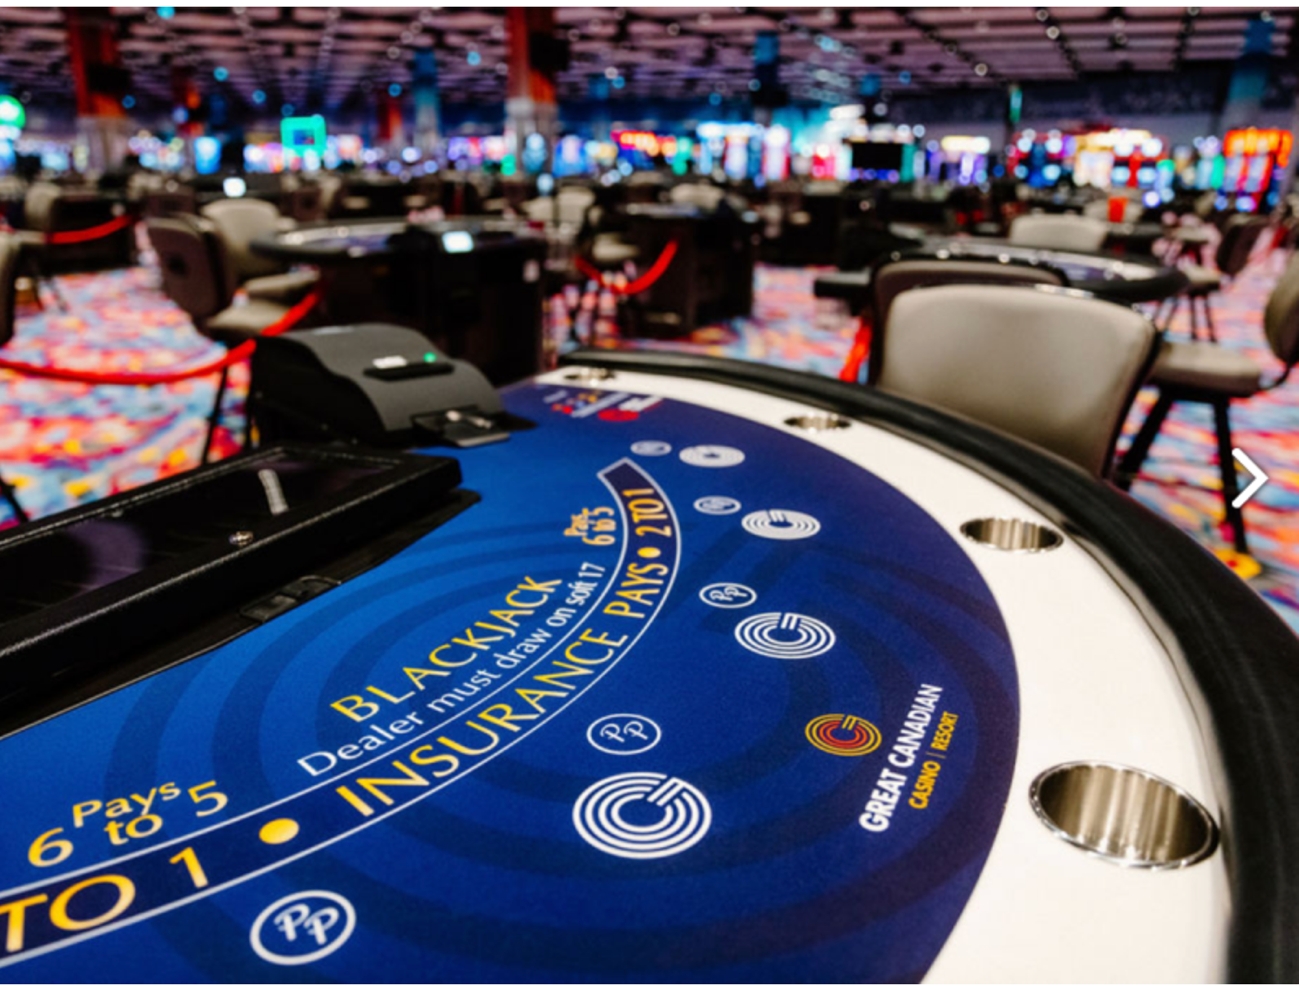 London will host the WSOP poker in July